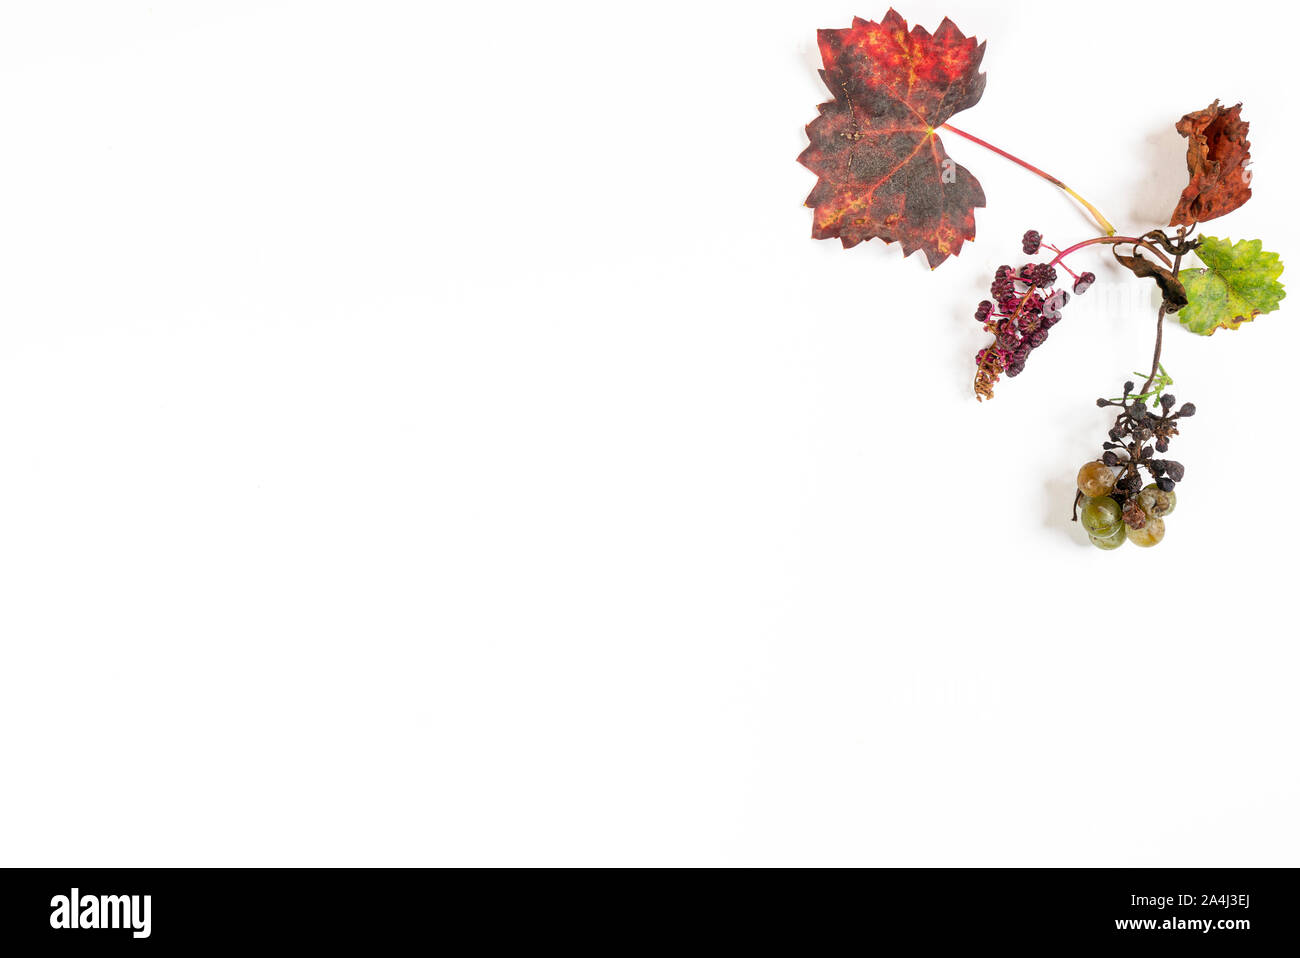 Une brindille avec un tas de raisins pourris à l'automne sur une surface blanche Banque D'Images